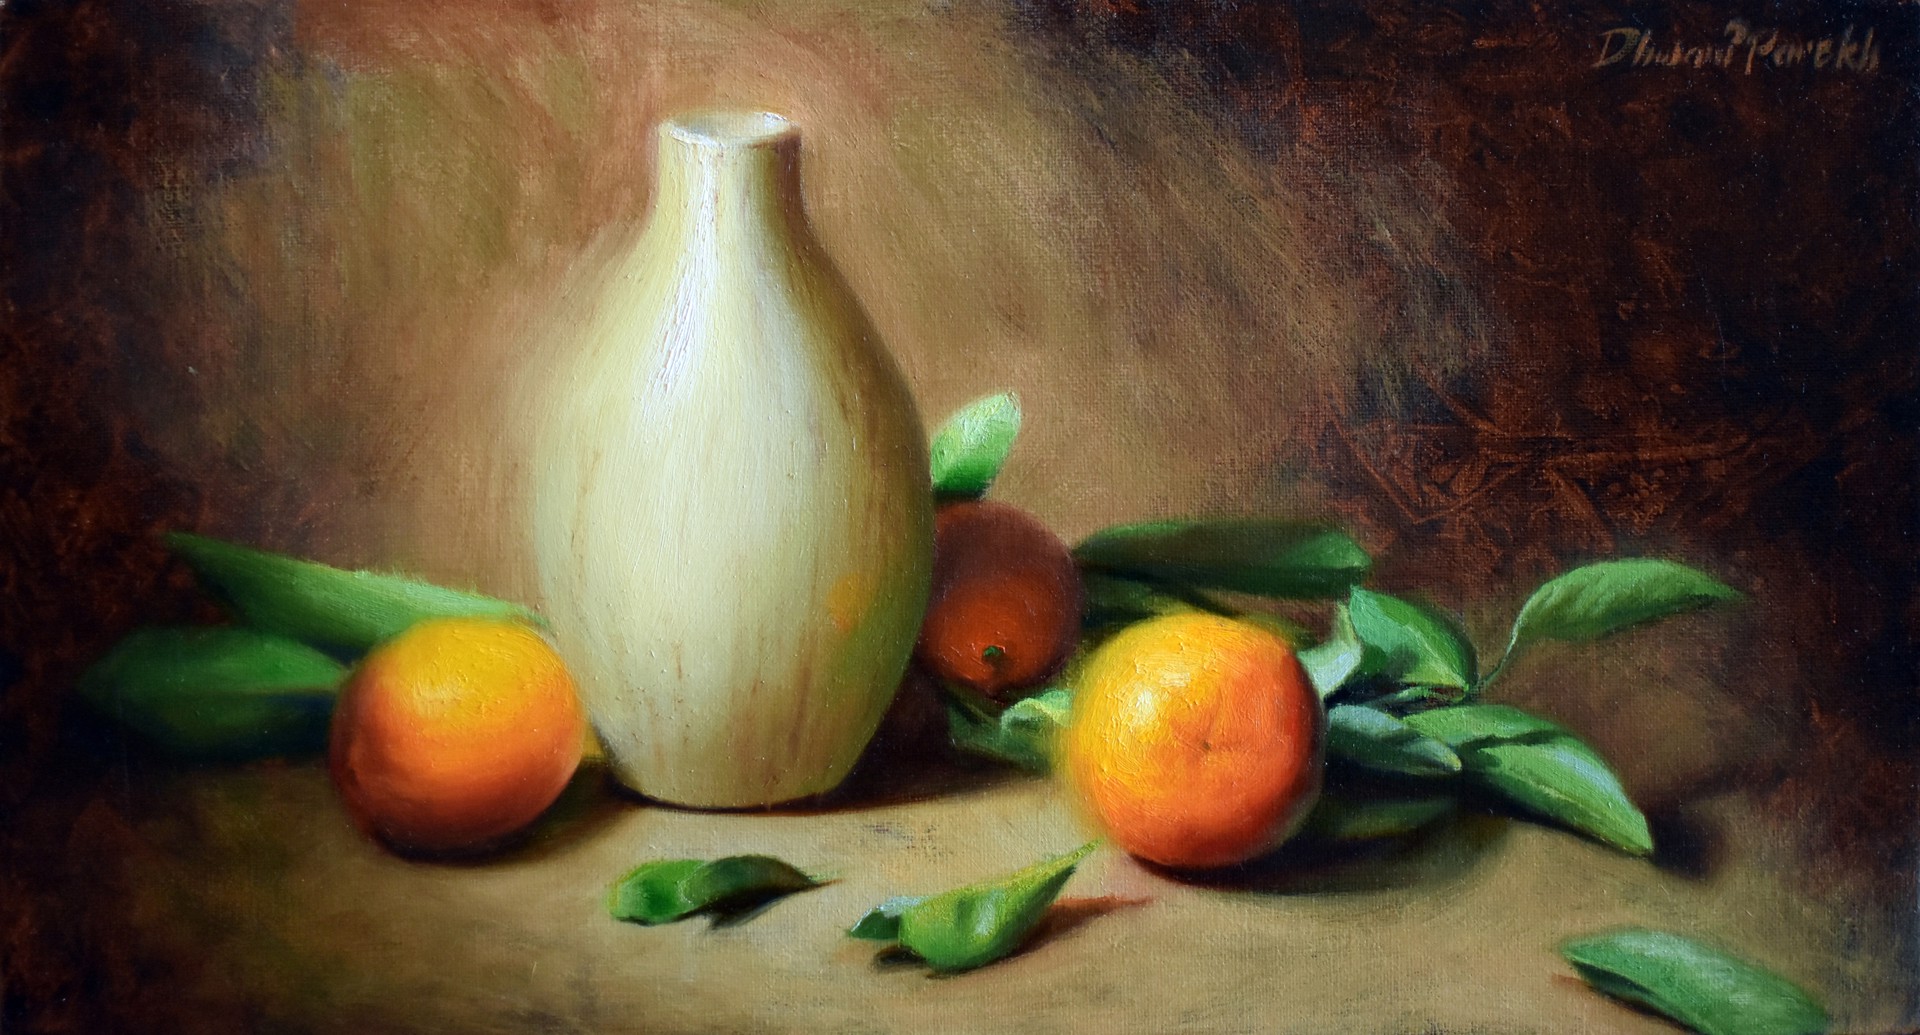 Between Oranges II by Dhwani Parekh